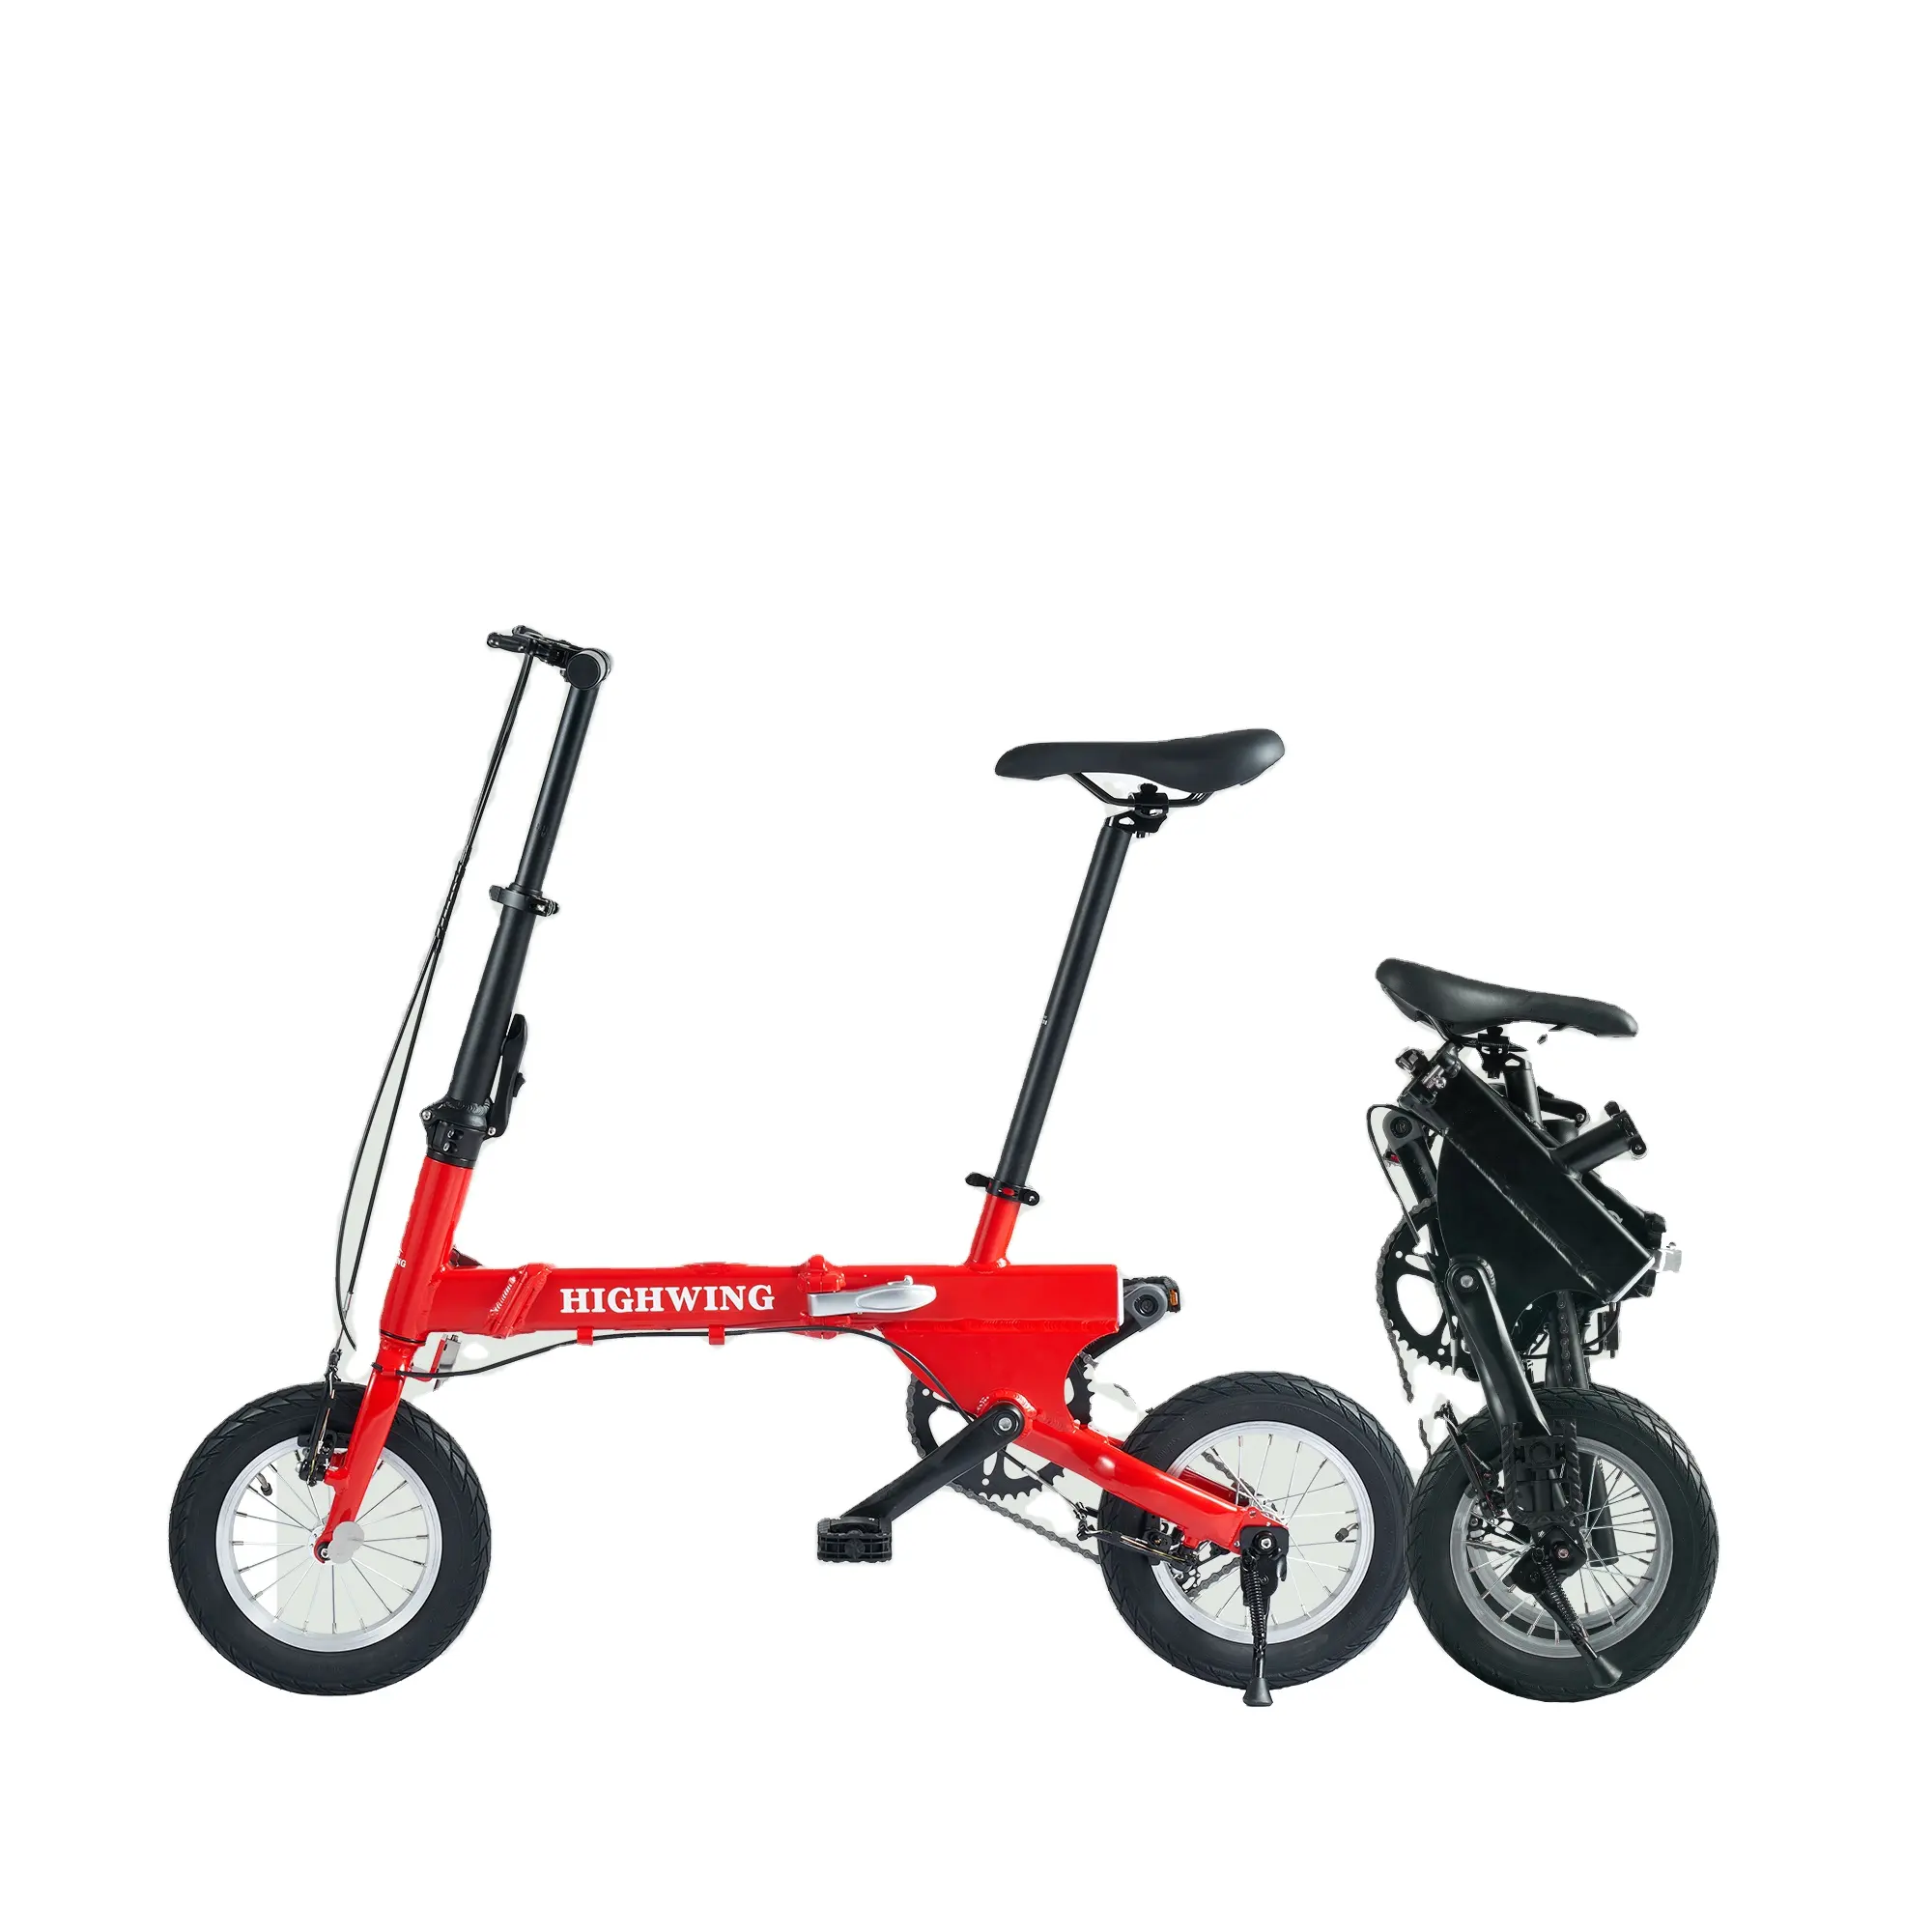 3 단 변속기가있는 야외 접이식 자전거 전체 알루미늄 미니 접이식 자전거 14 인치 디스크 브레이크 접이식 사이클